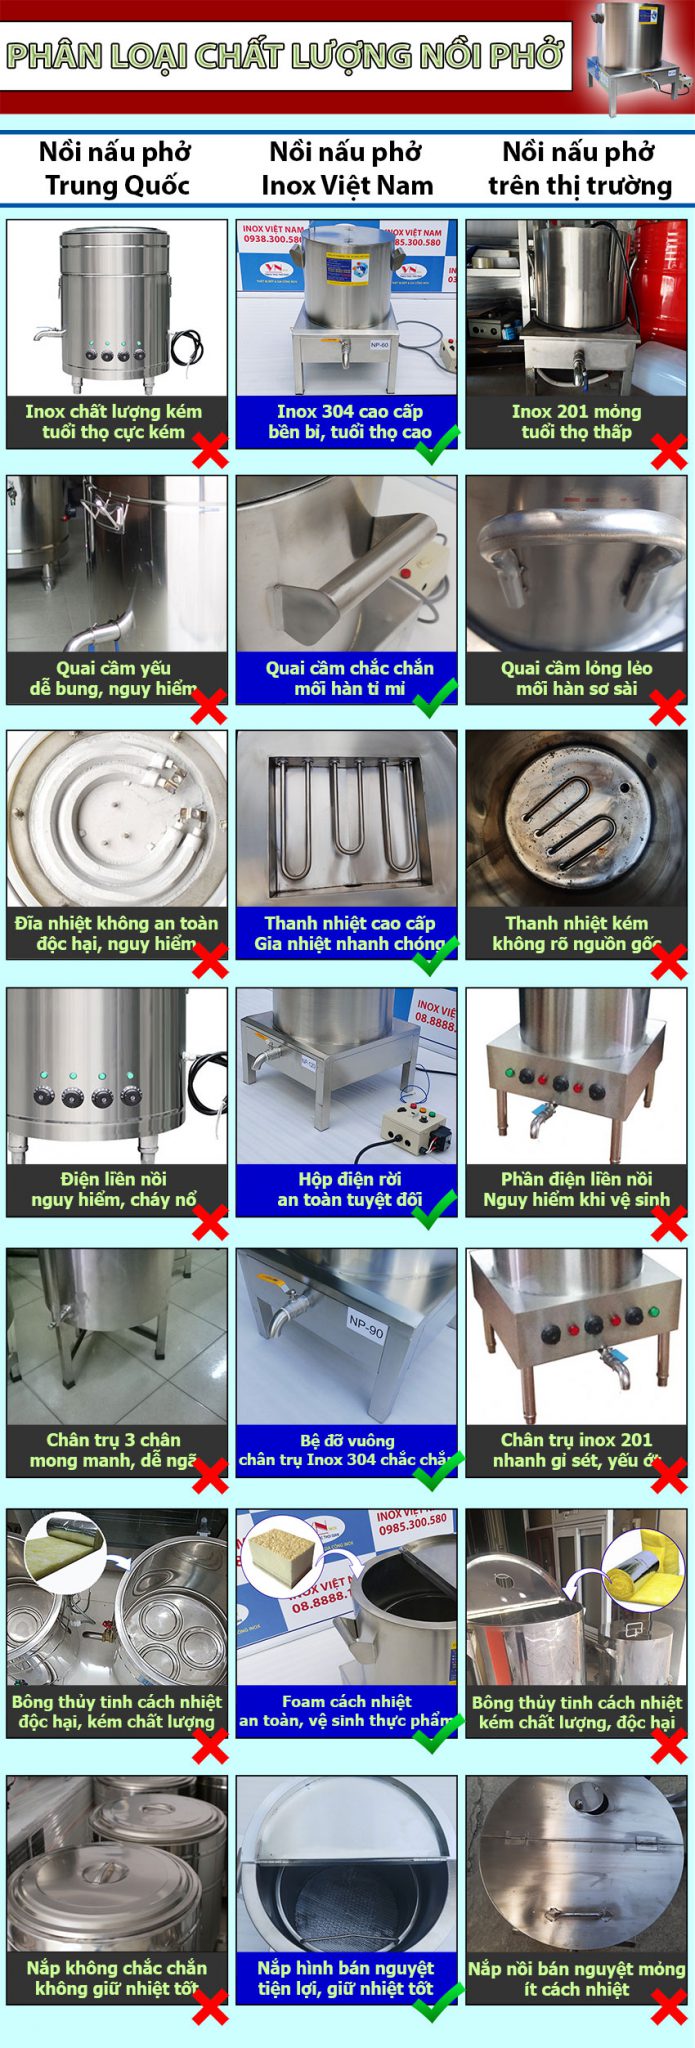 Cách phân biệt nồi nấu phở bằng điện của Inox Việt Nam với các loại nồi điện nấu phở Trung Quốc, nồi nấu phở giá rẻ trên thị trường.